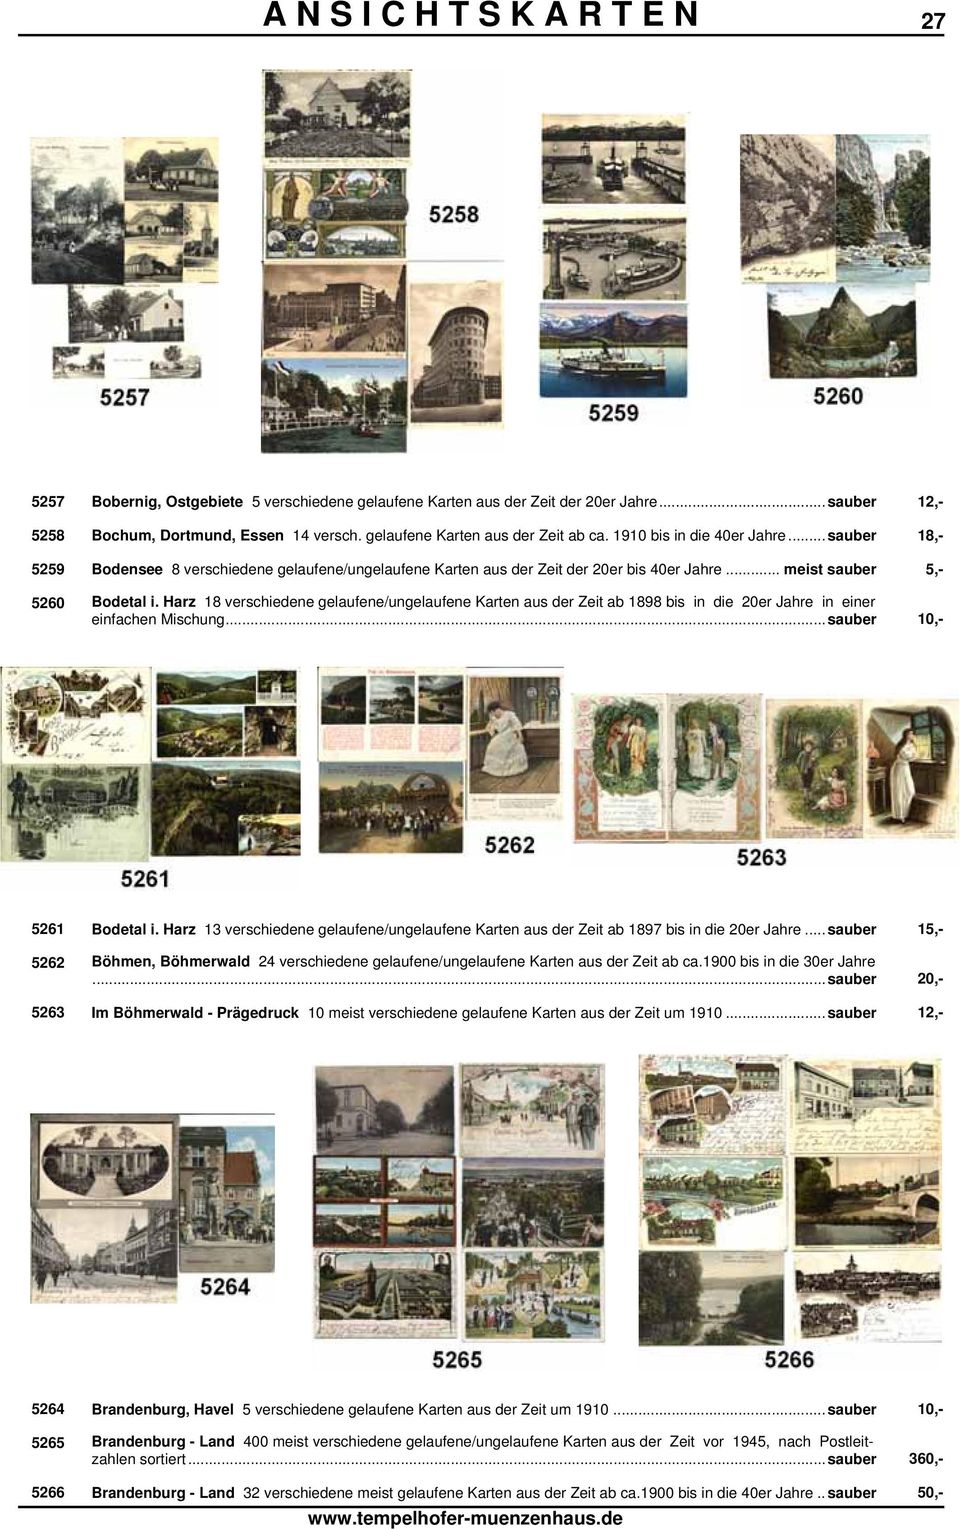 Harz 18 verschiedene gelaufene/ungelaufene Karten aus der Zeit ab 1898 bis in die 20er Jahre in einer einfachen Mischung...sauber 10,- 5261 Bodetal i.